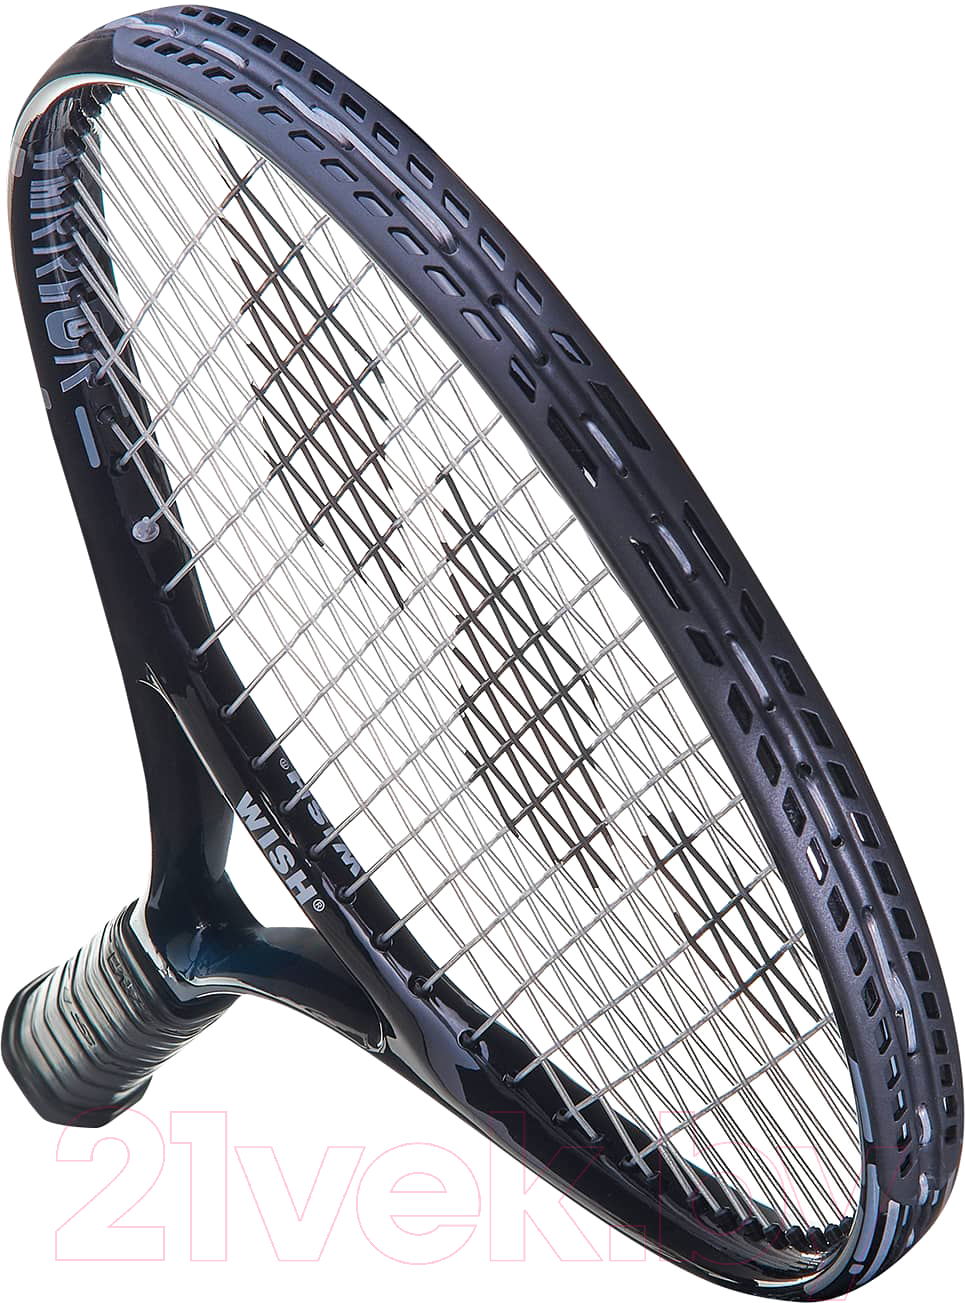 Теннисная ракетка WISH 27 FusionTec 300